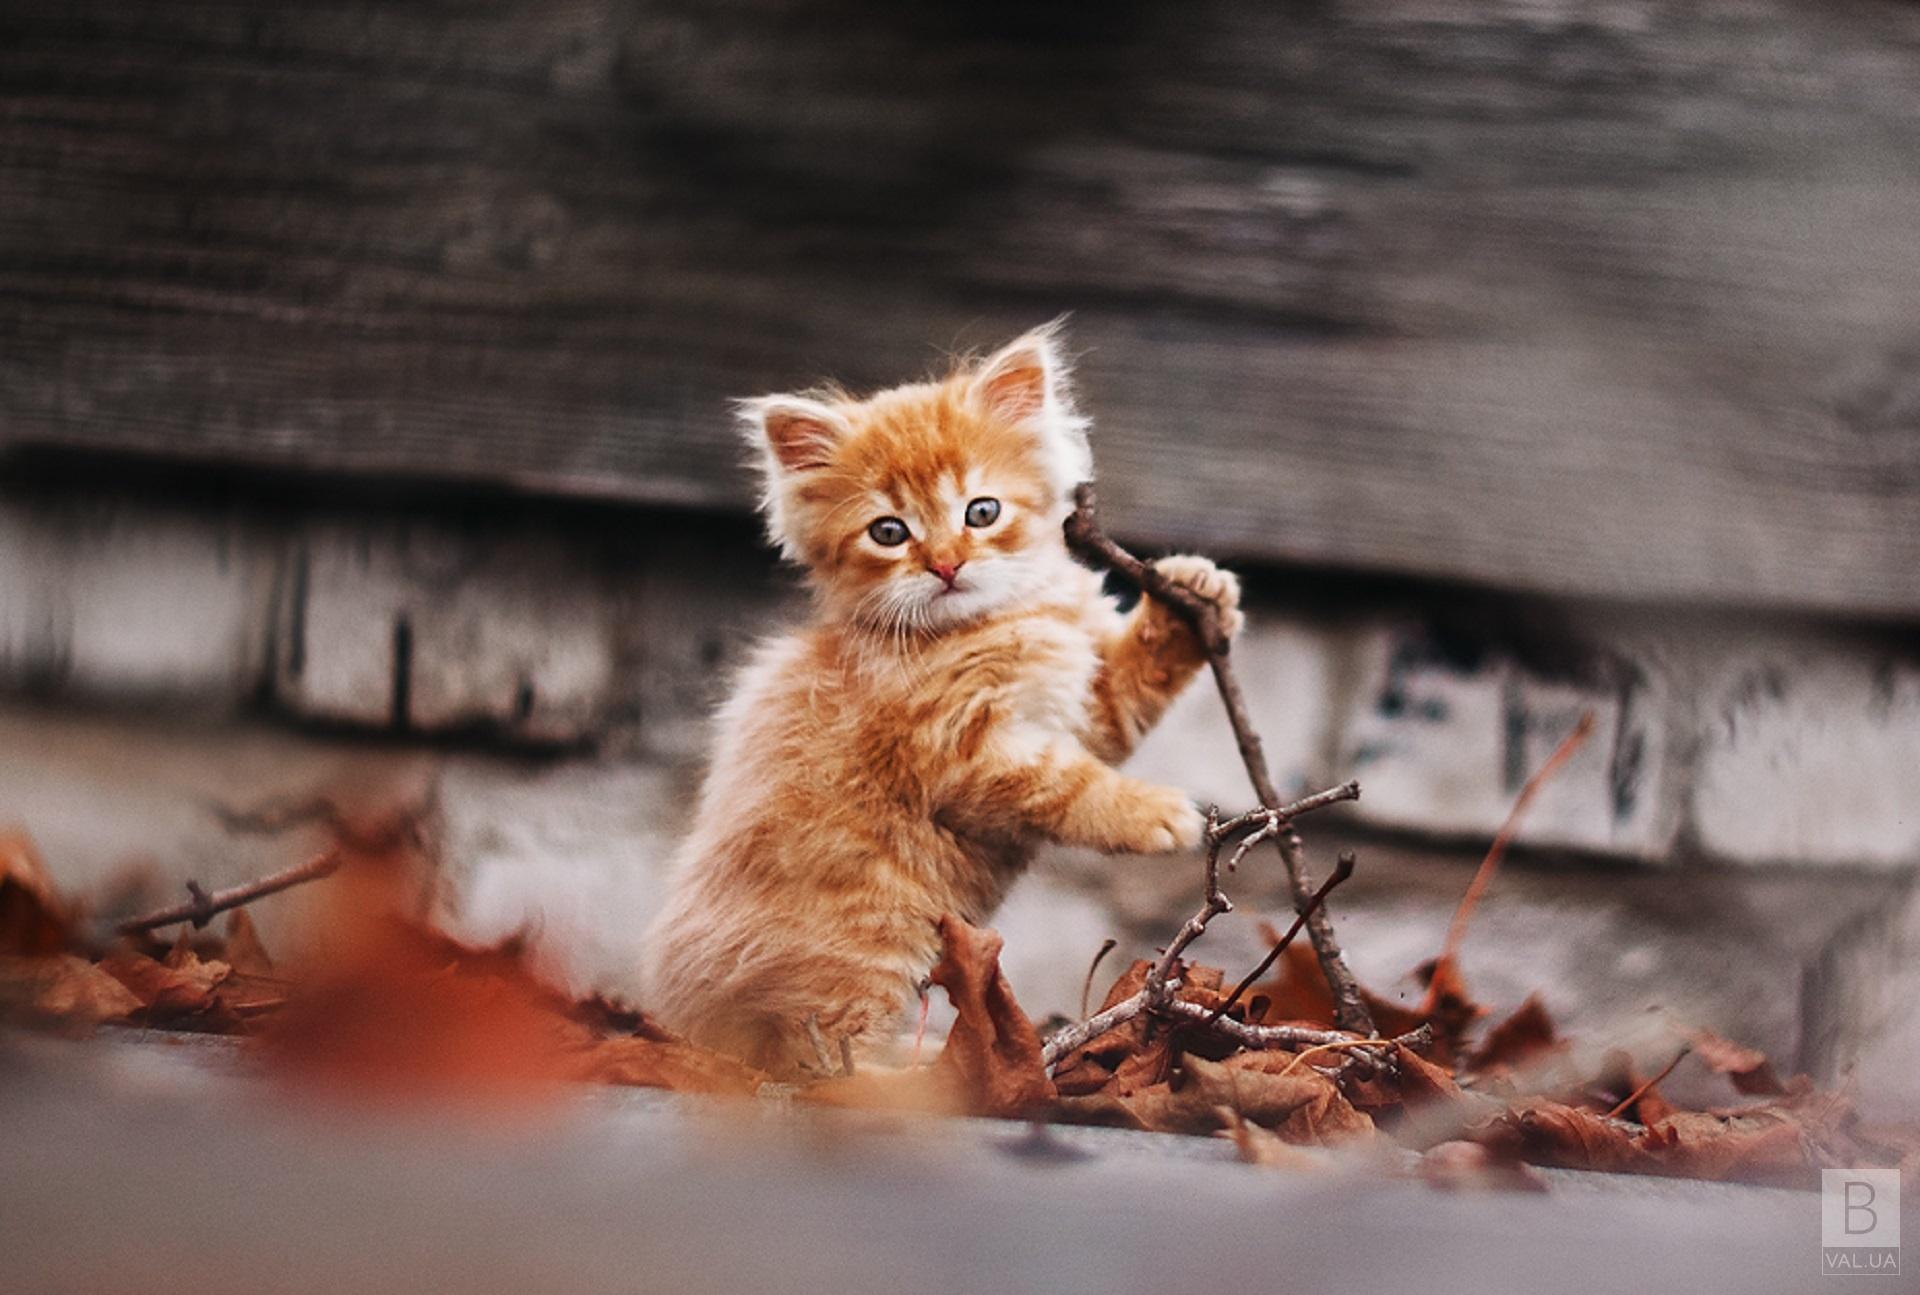 Октябрь в Украину придет теплым и ласковым, как рыжий котенок», - синоптик о погоде на завтра